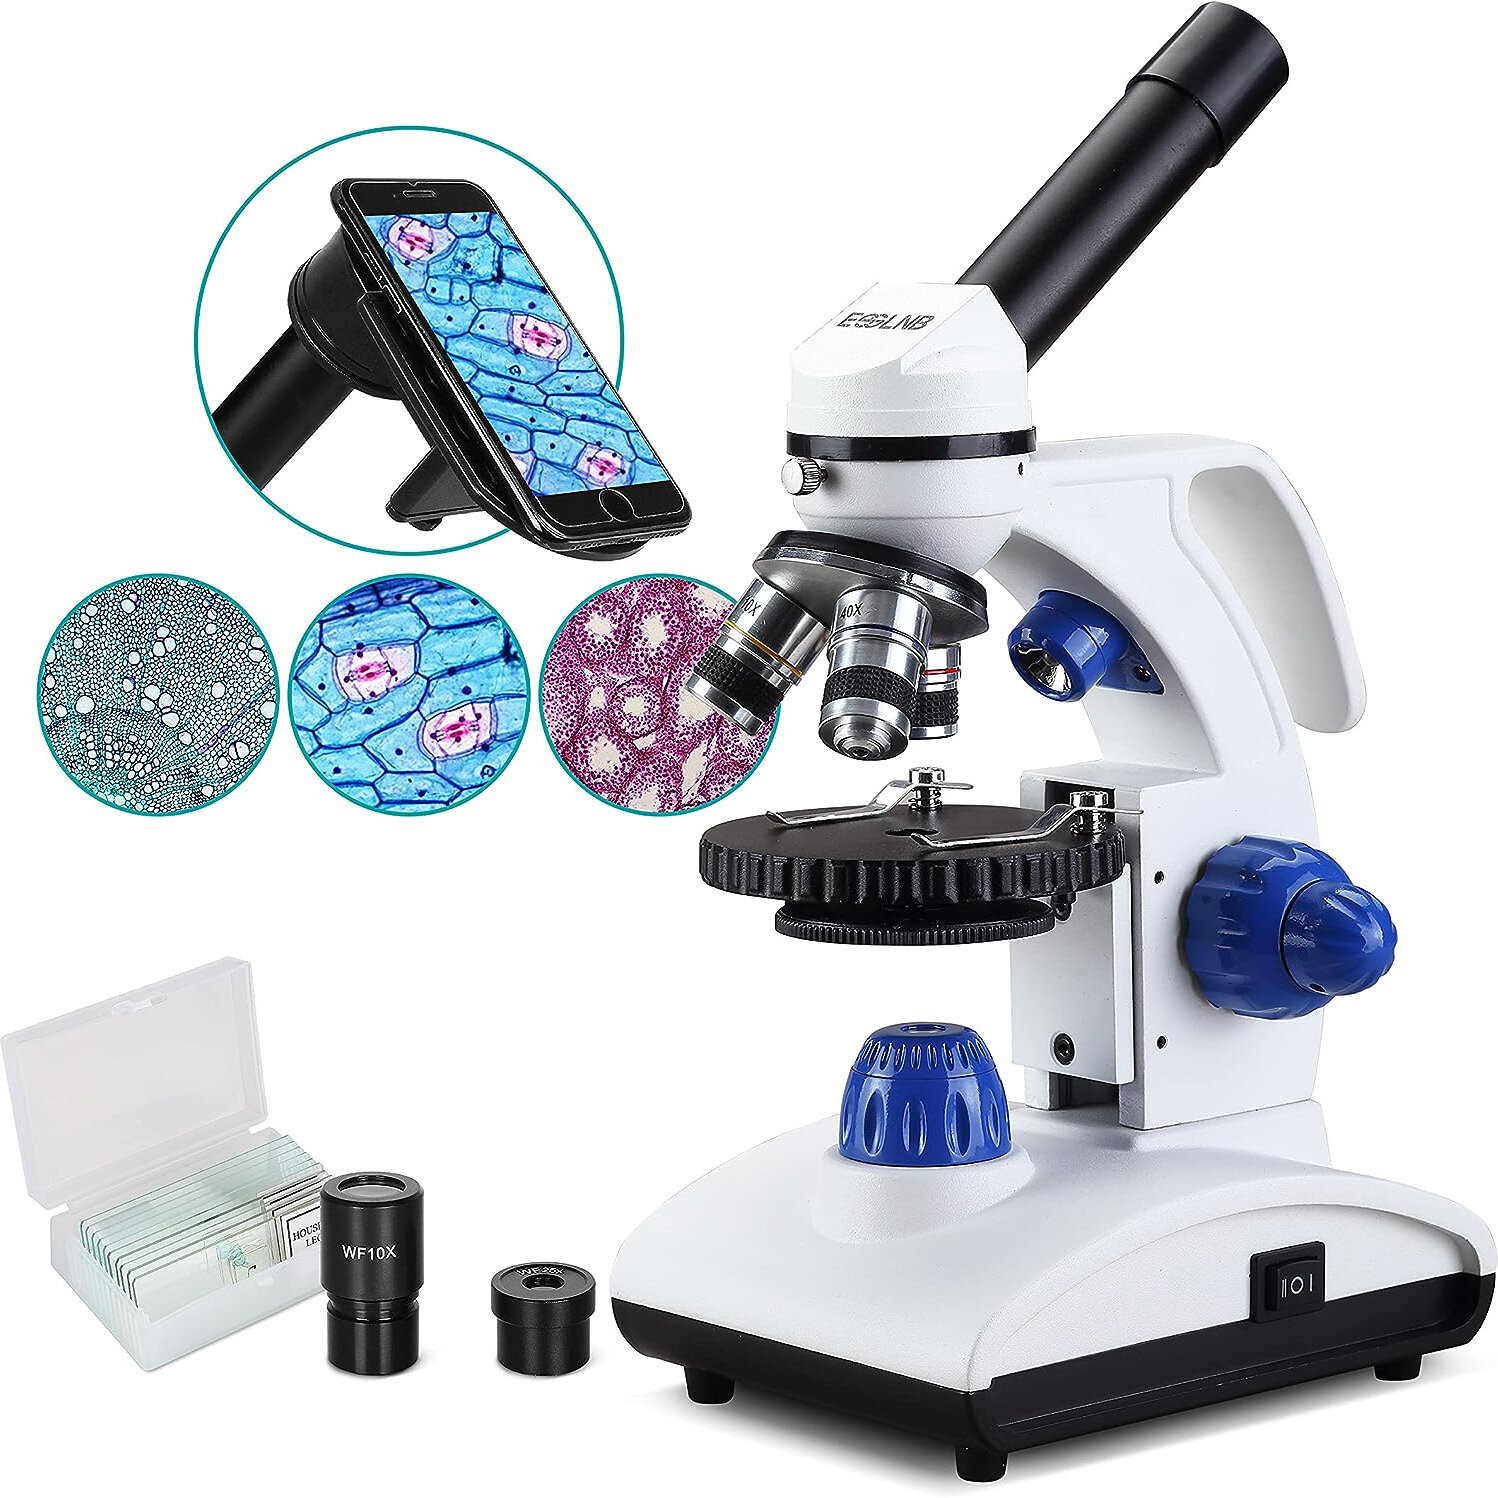 [EU Direct] Erro na tradução ES1045 Microscópio 1000X Microscópio de estudante para crianças Microscópio biológico de luz LED com lâminas e adaptador de telefone Lentes de vidro óptico em metal.